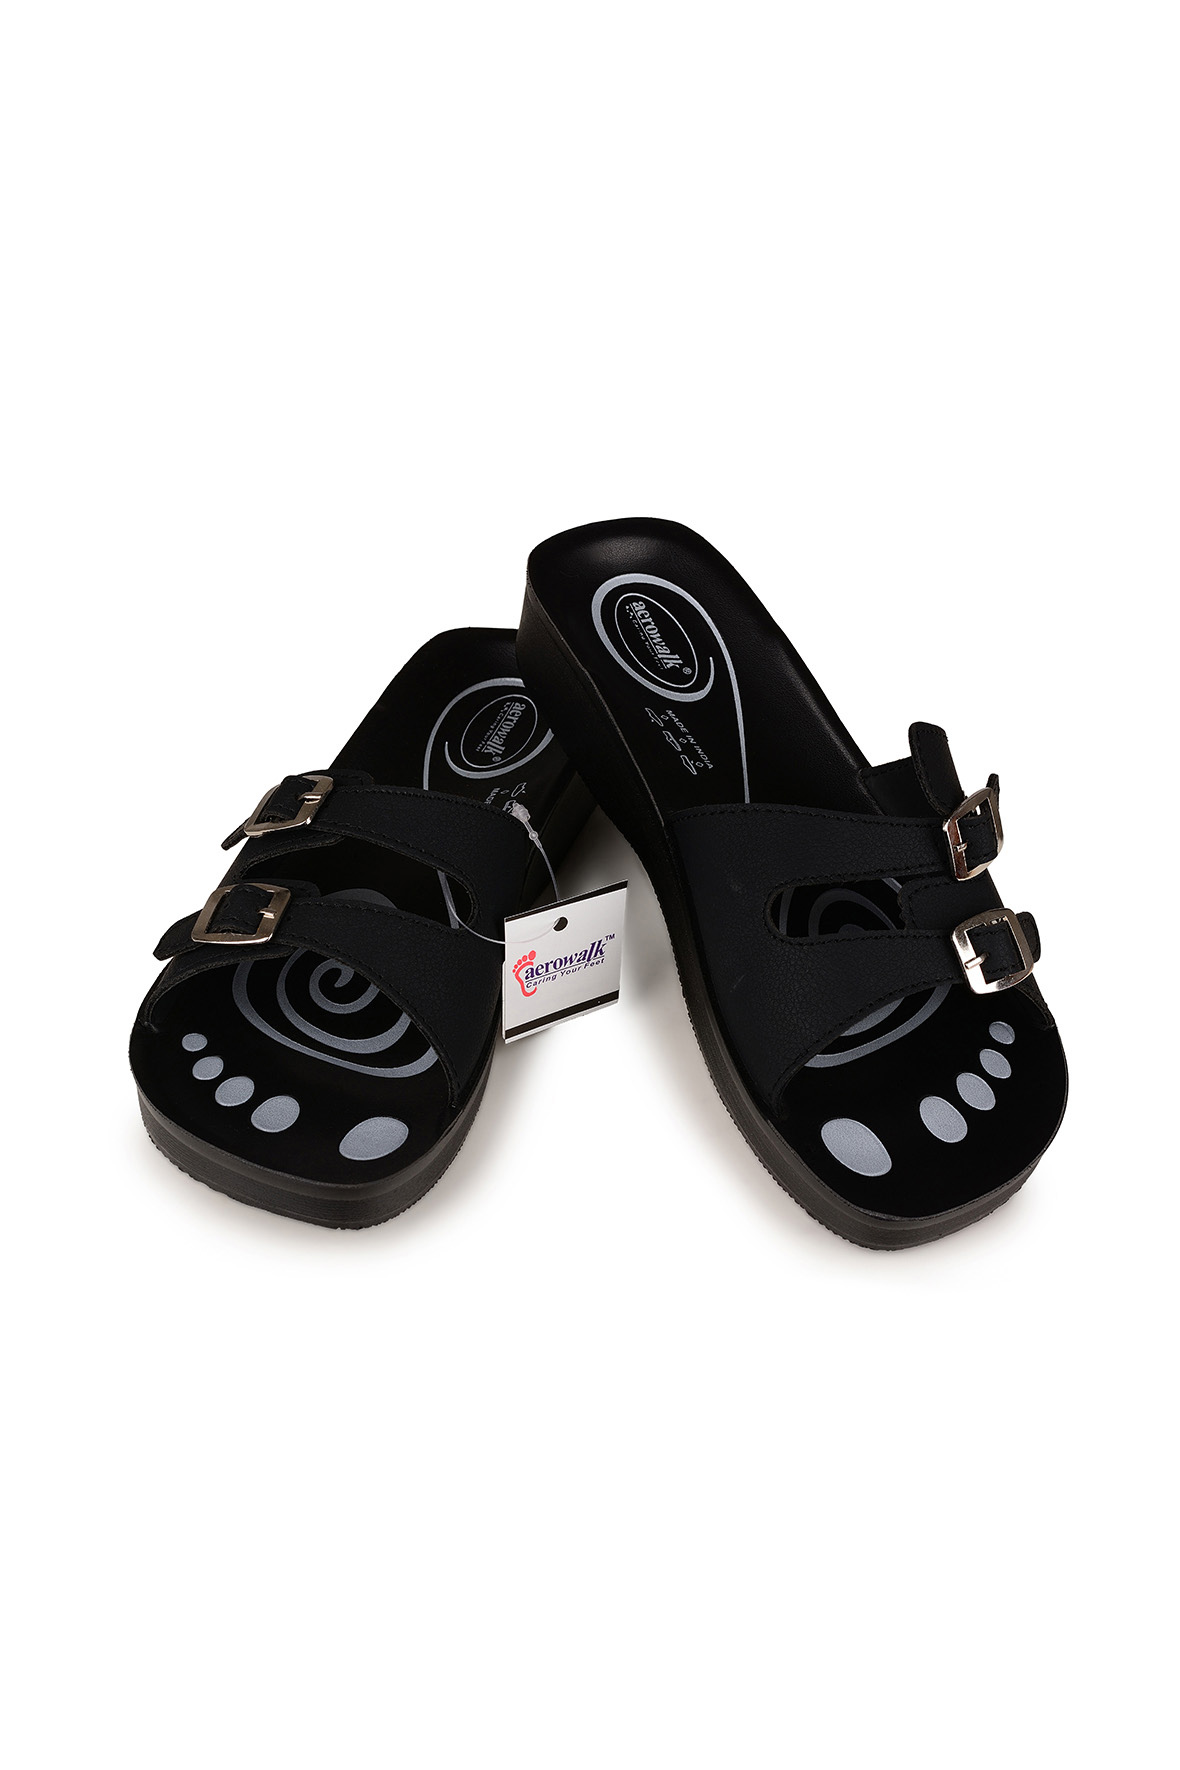 Aerowalk sandal i sort til piger - stik i sandal dobbelt rem -